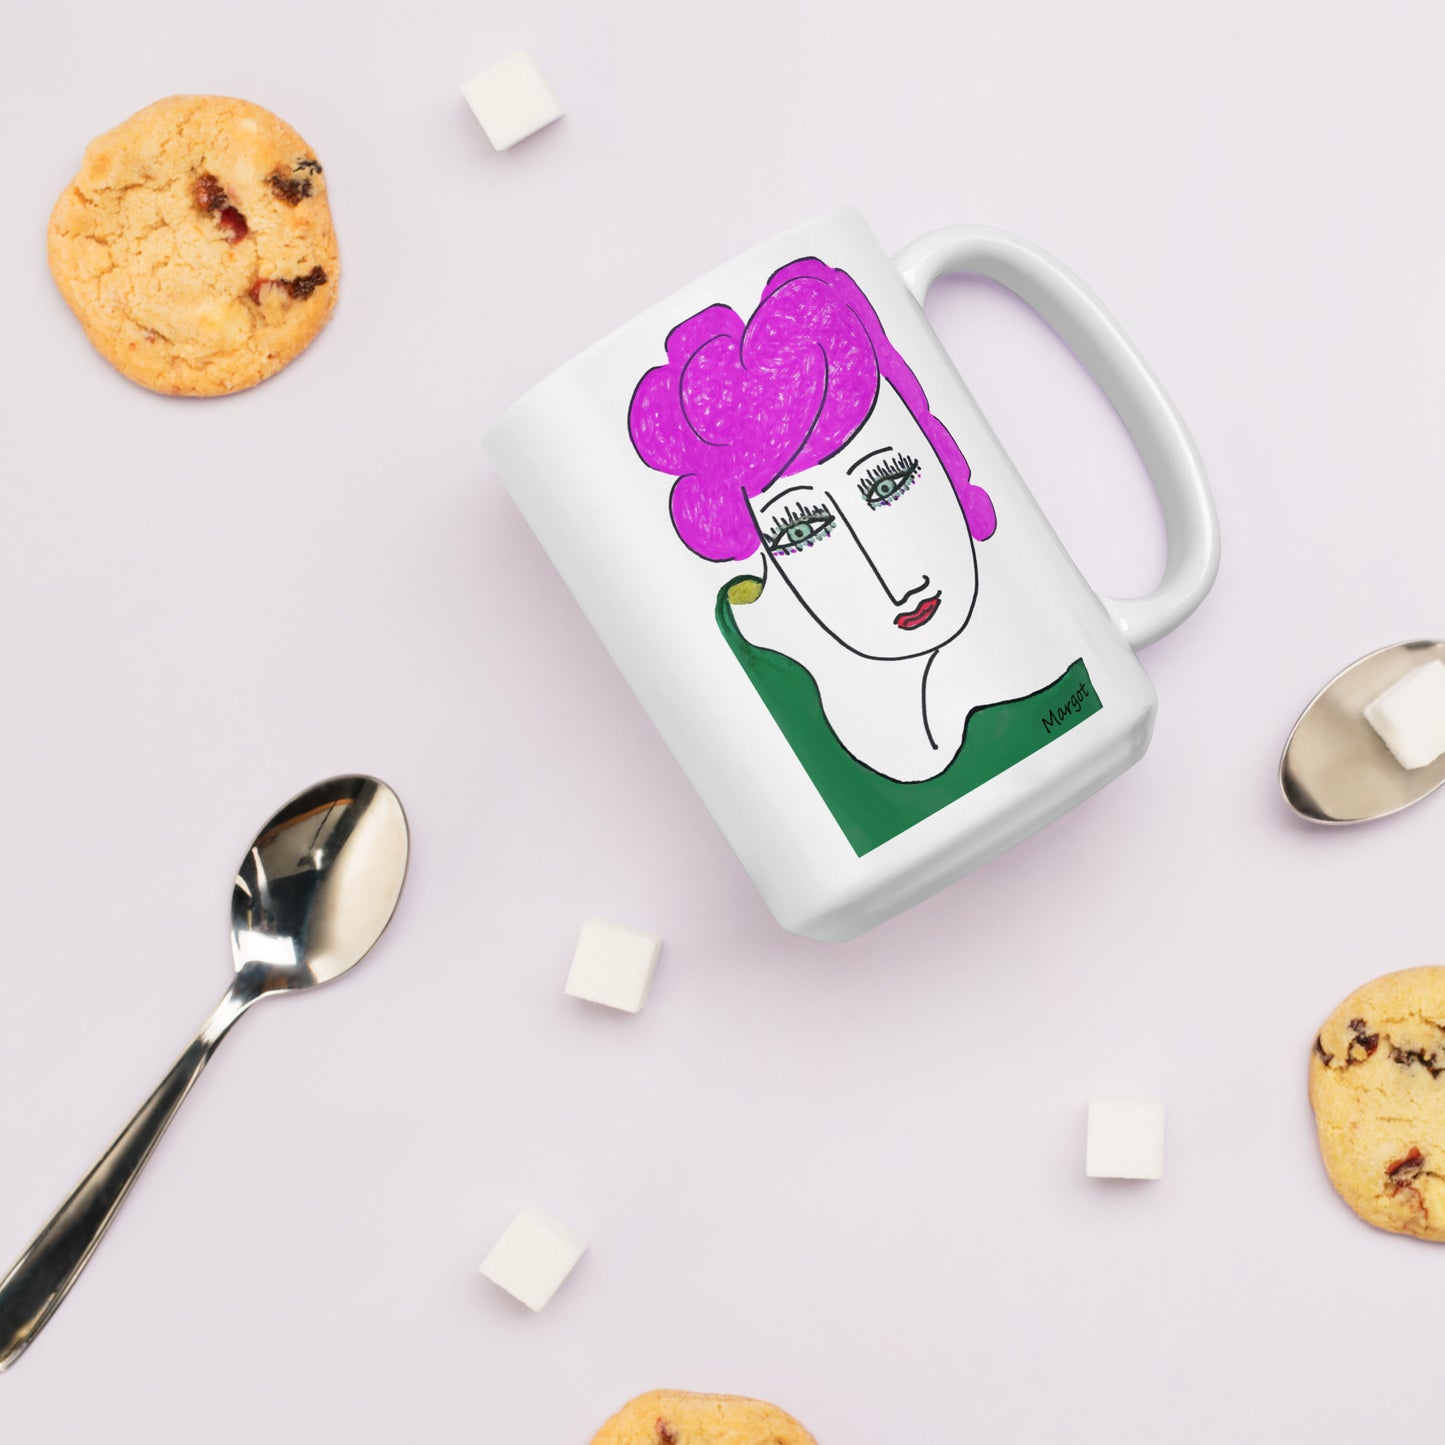 Coffee and Tea mug